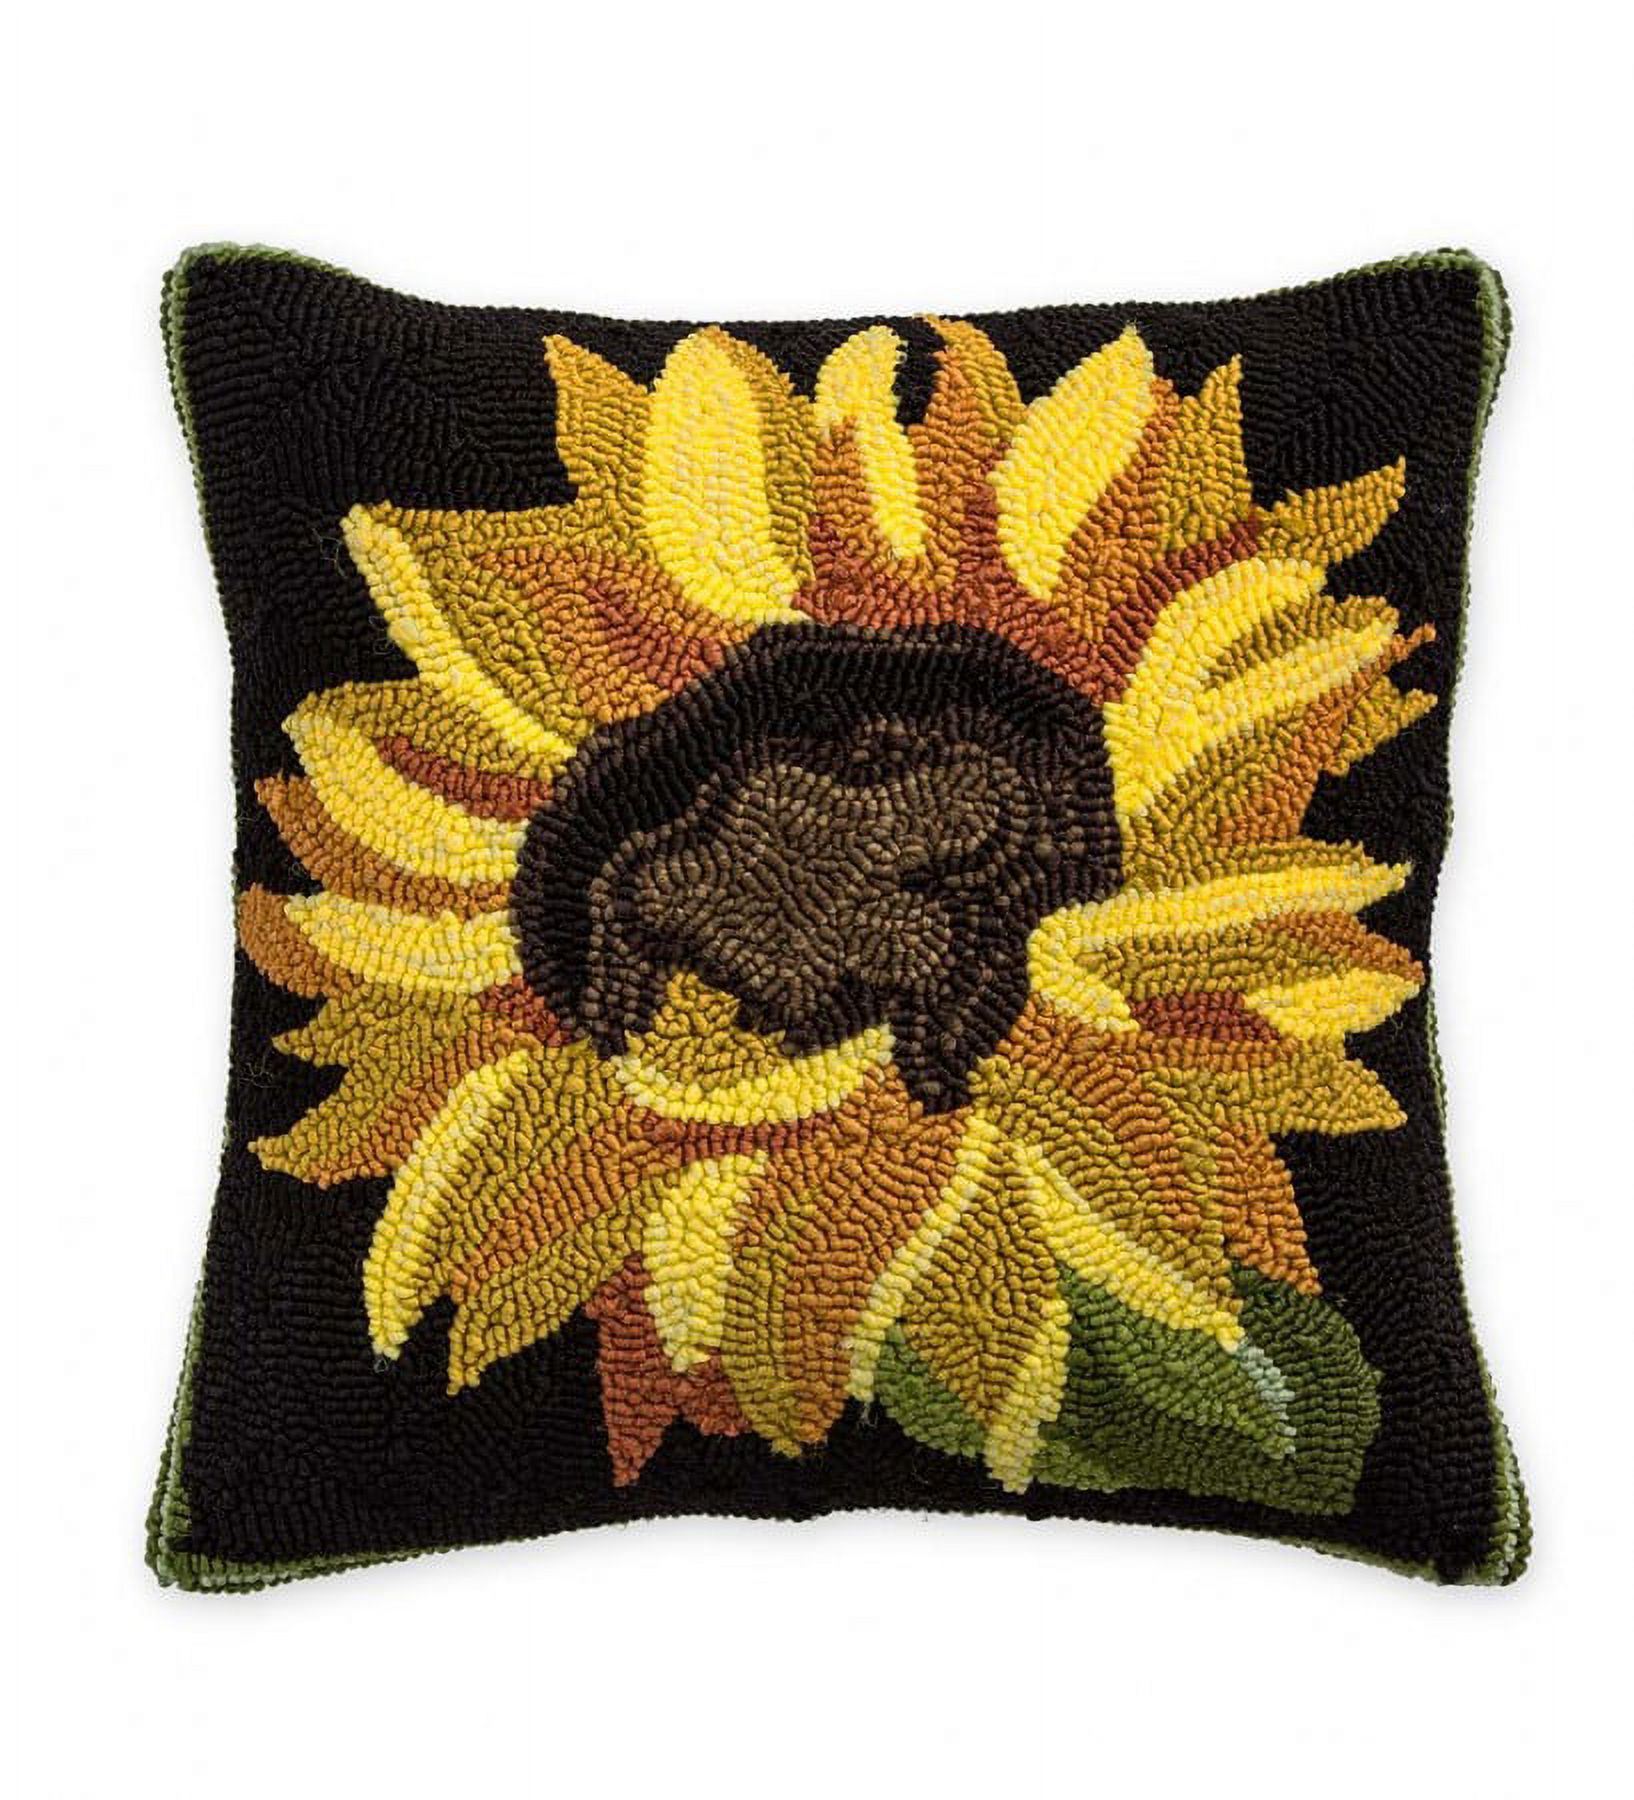 Plow & Hearth Indoor/Outdoor Sunflower Throw Pillow - image 1 of 1